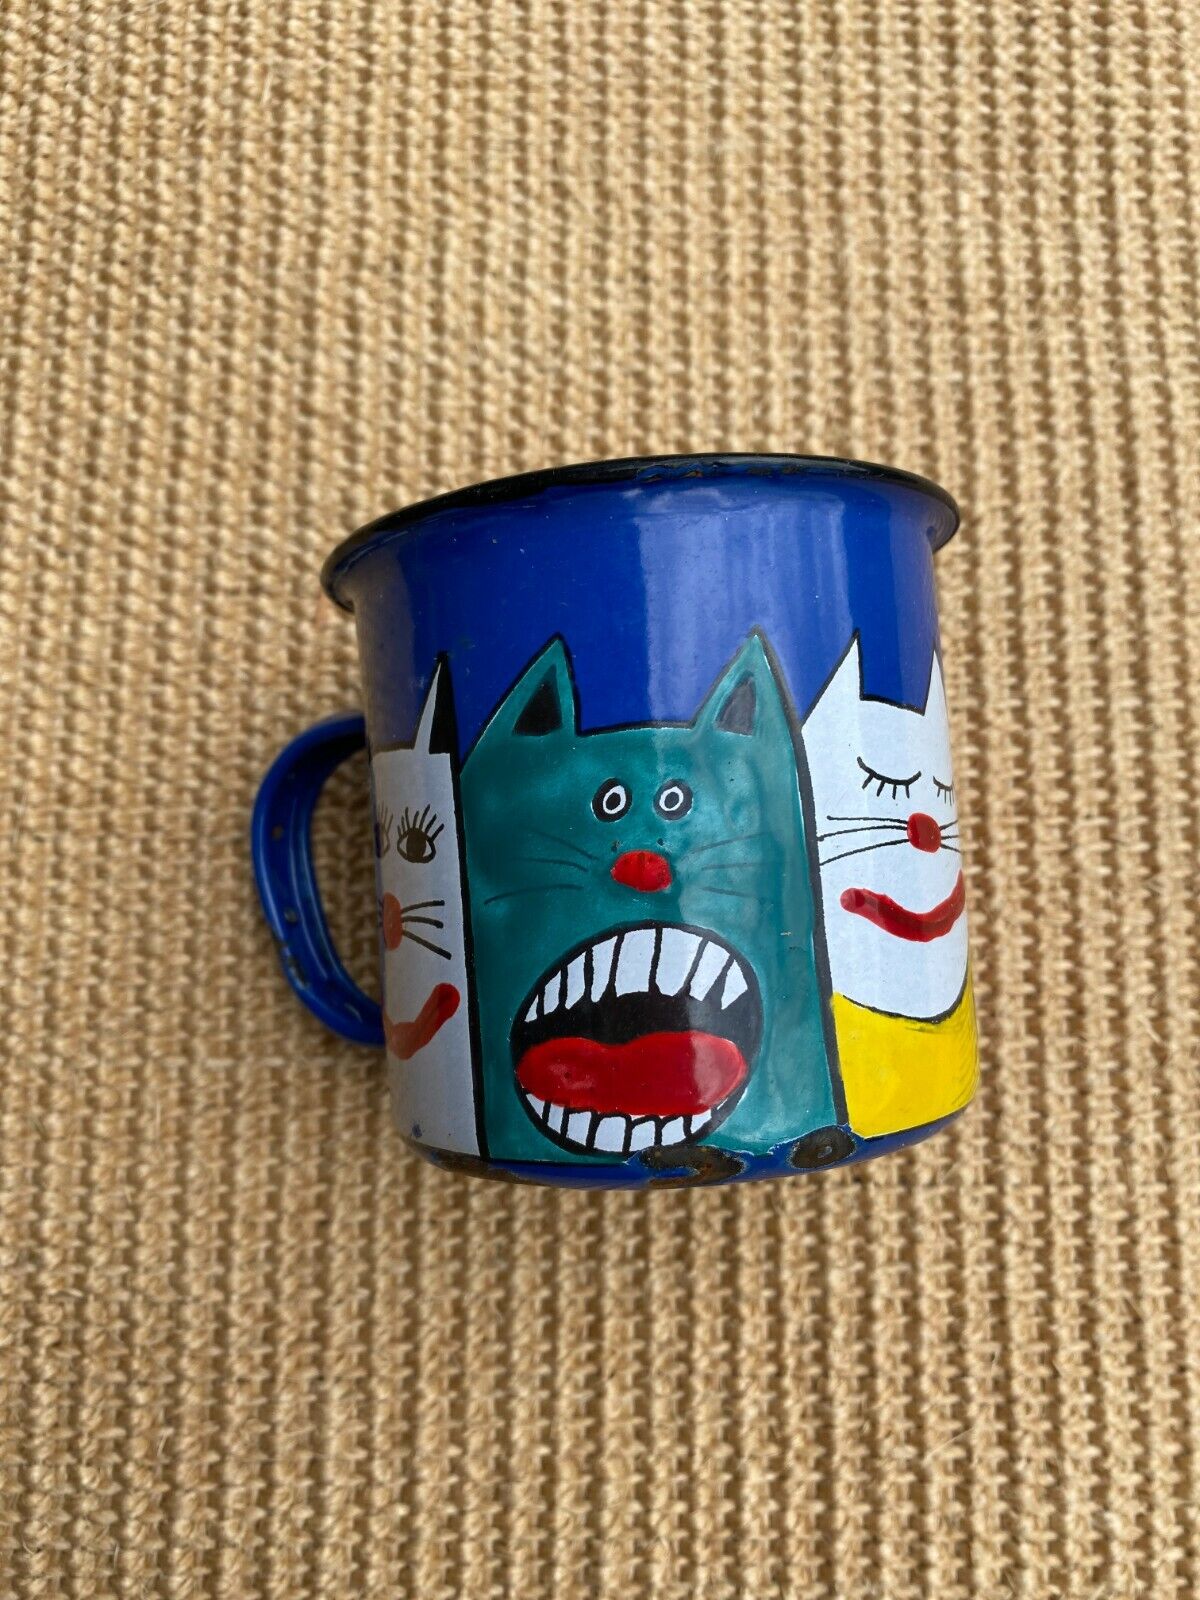 AS IS Smaltum Marketa Novotna Blue Enamelware Mug Cup w Funny Cats Cat Faces